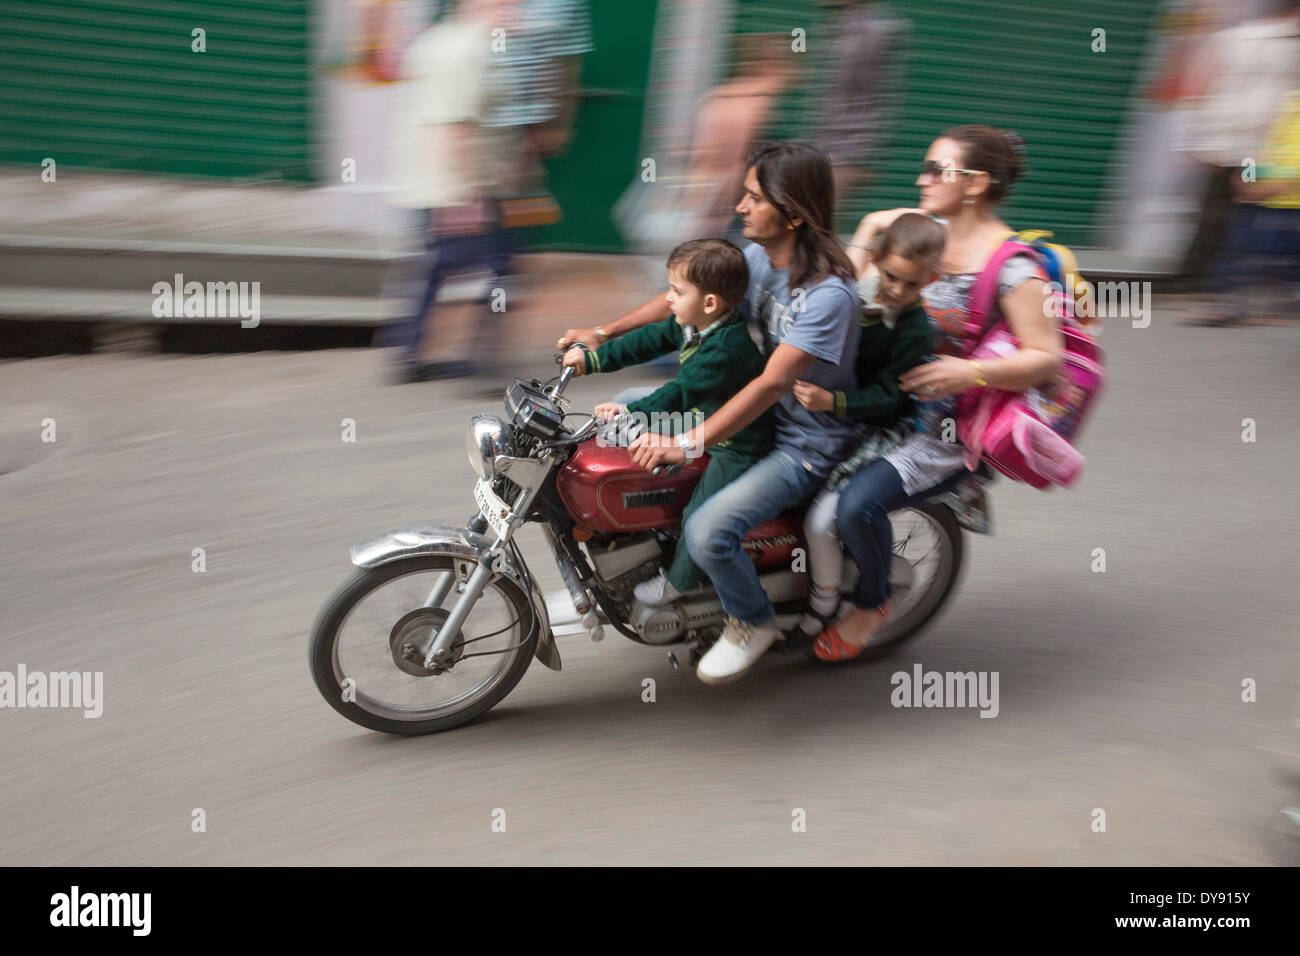 Moto, moto, la conduite, l'Inde, l'Asie, de la circulation, des transports, de la famille, dangereux, Banque D'Images